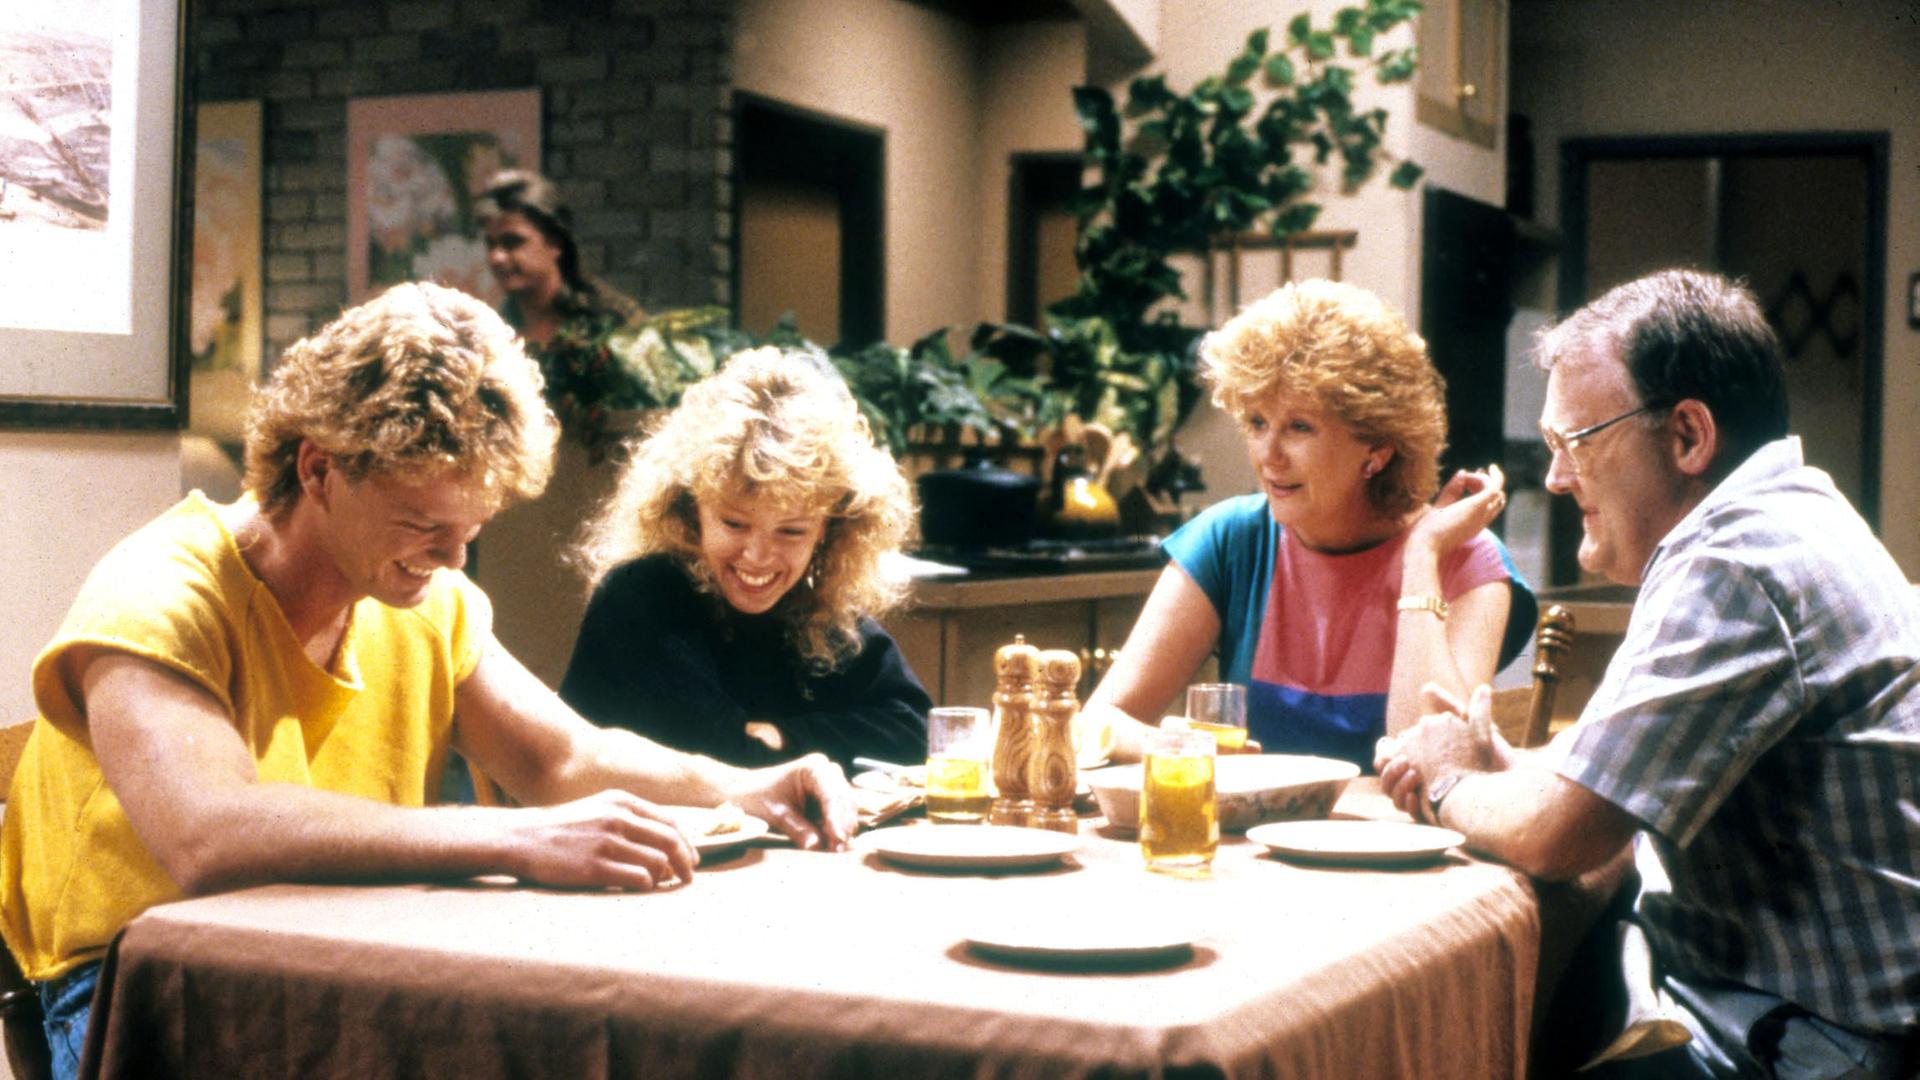 Szene aus der Serie "Neighbours", die Schauspieler Craig McLachlan, Kylie Minogue, Madge Charleston und Ian Smith sitzen gemeinsam am Küchentisch.